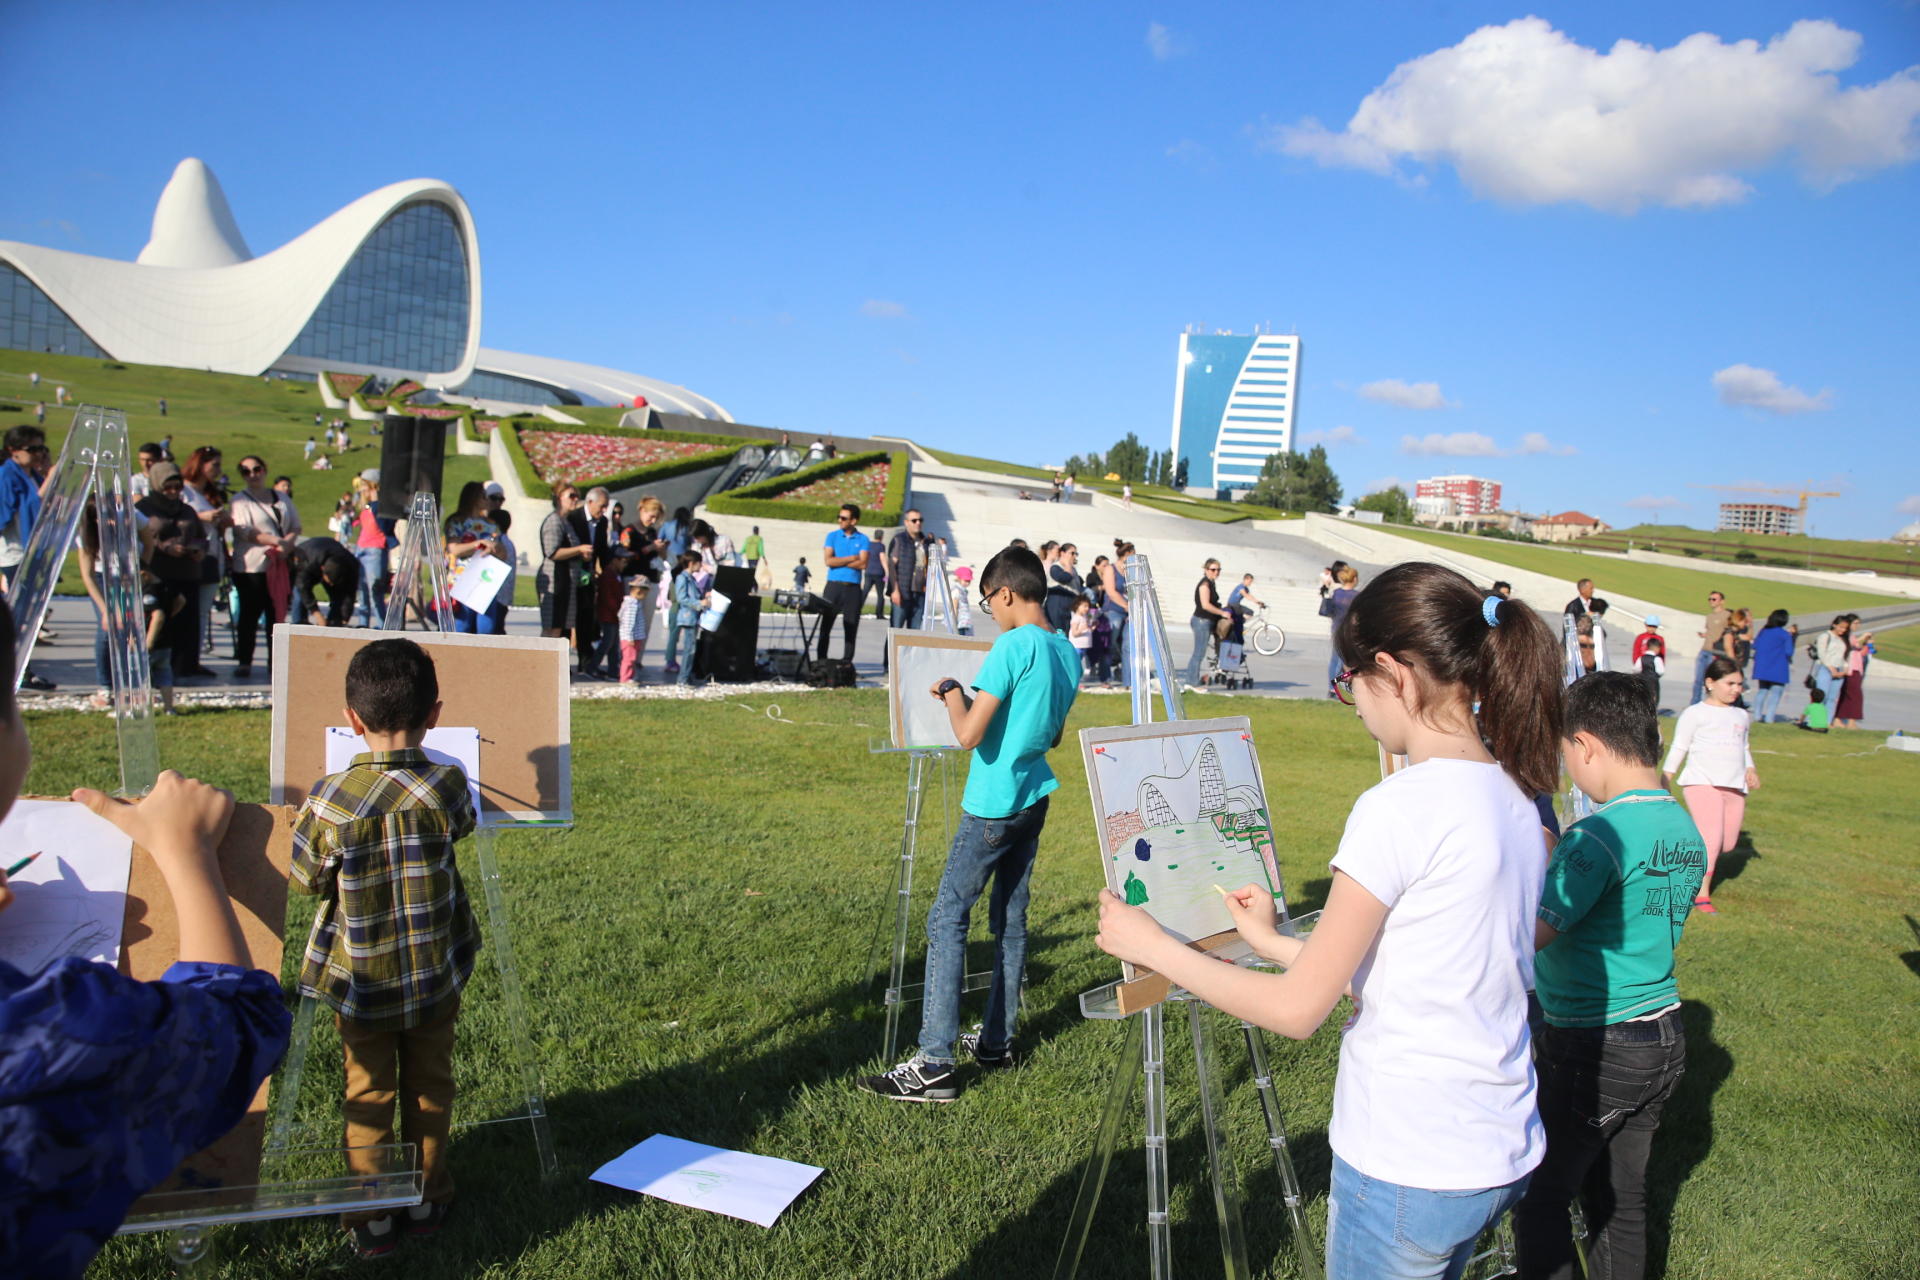 Heydər Əliyev Mərkəzinin parkında uşaqlar üçün rəsm dərsi (FOTO)